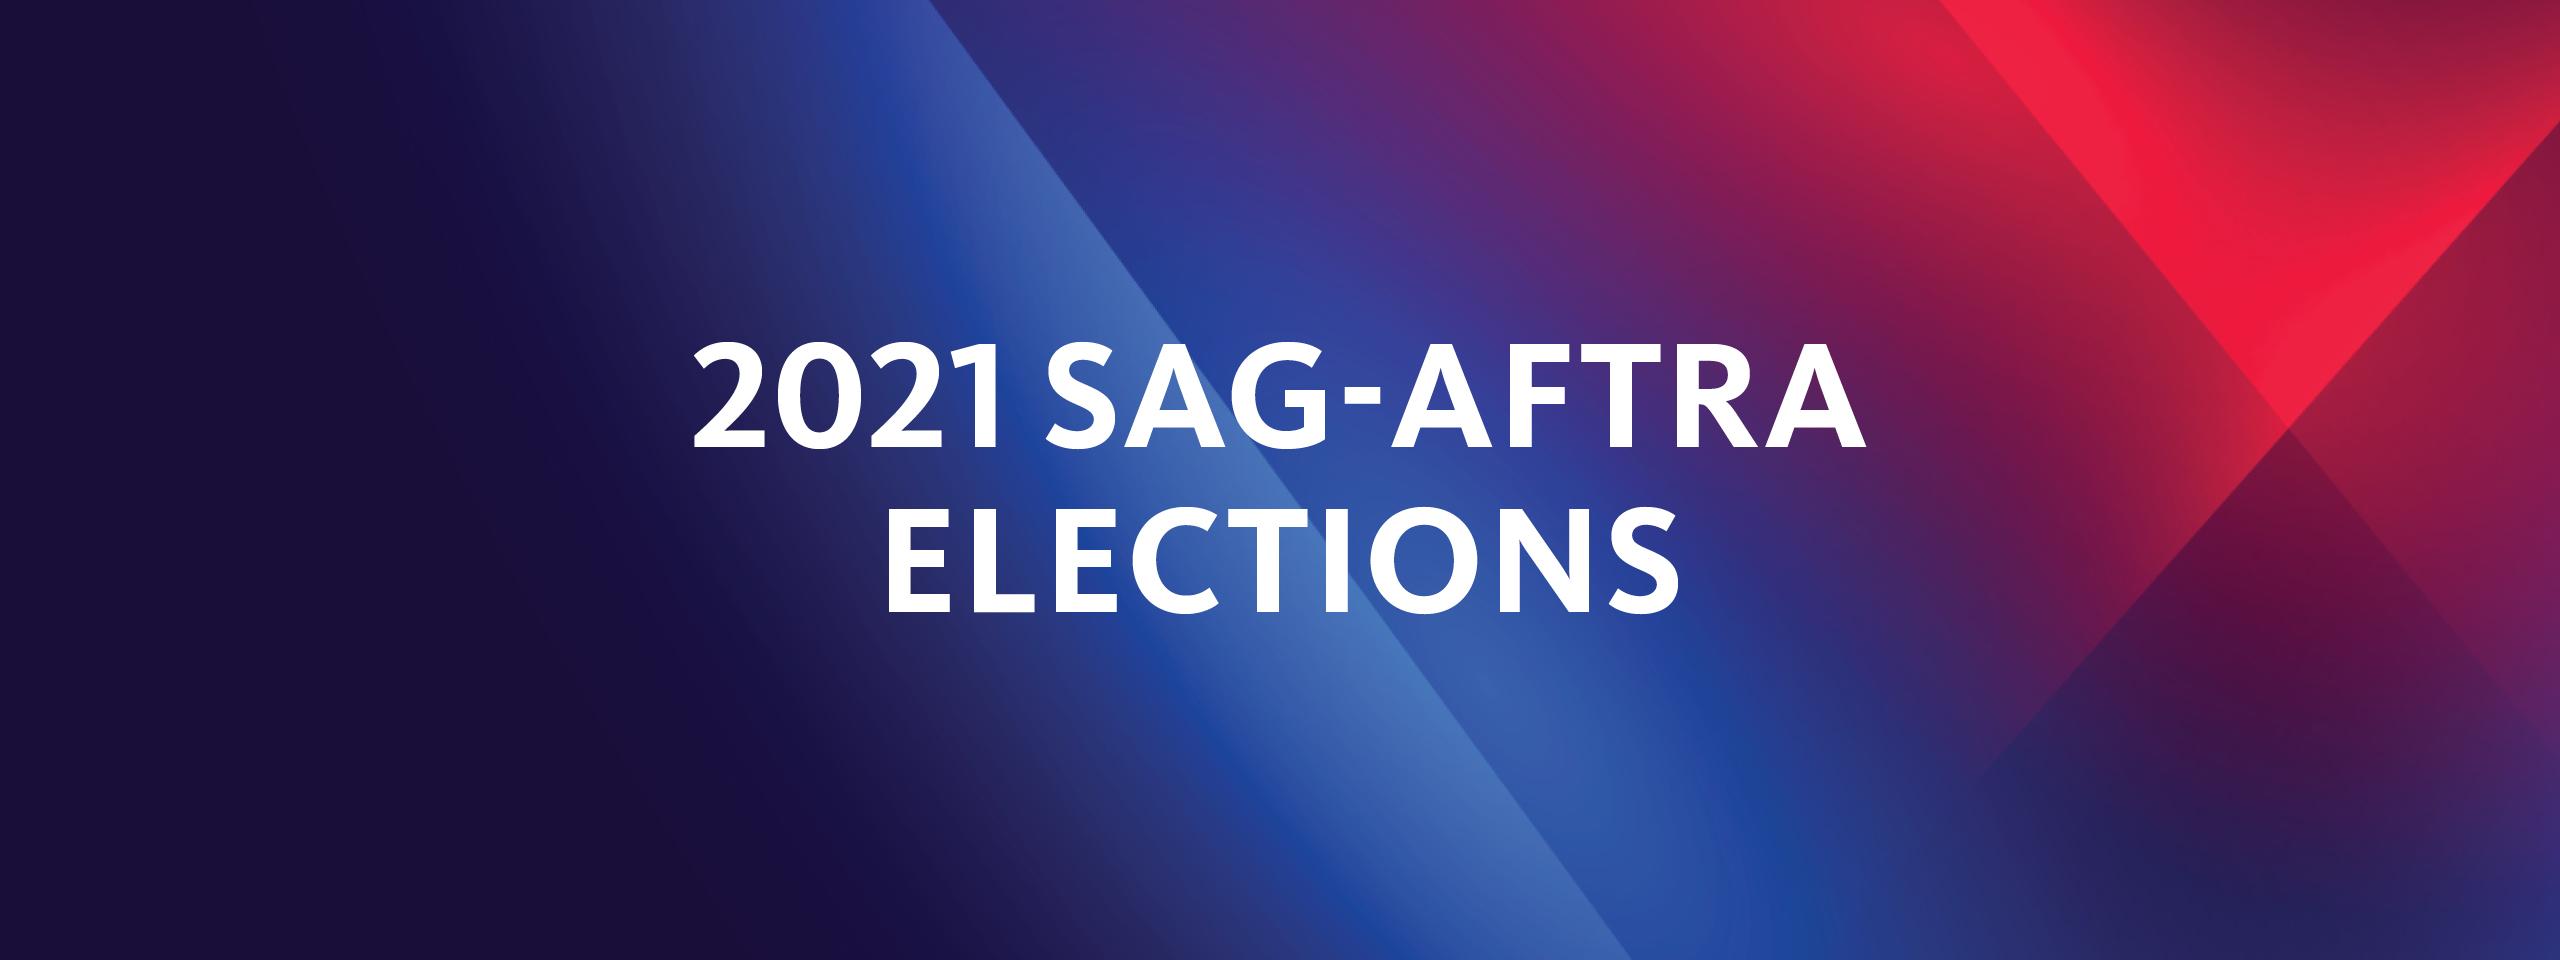 '2021 SAG-AFTRA Elections' en blanco con una V azul y roja en el fondo